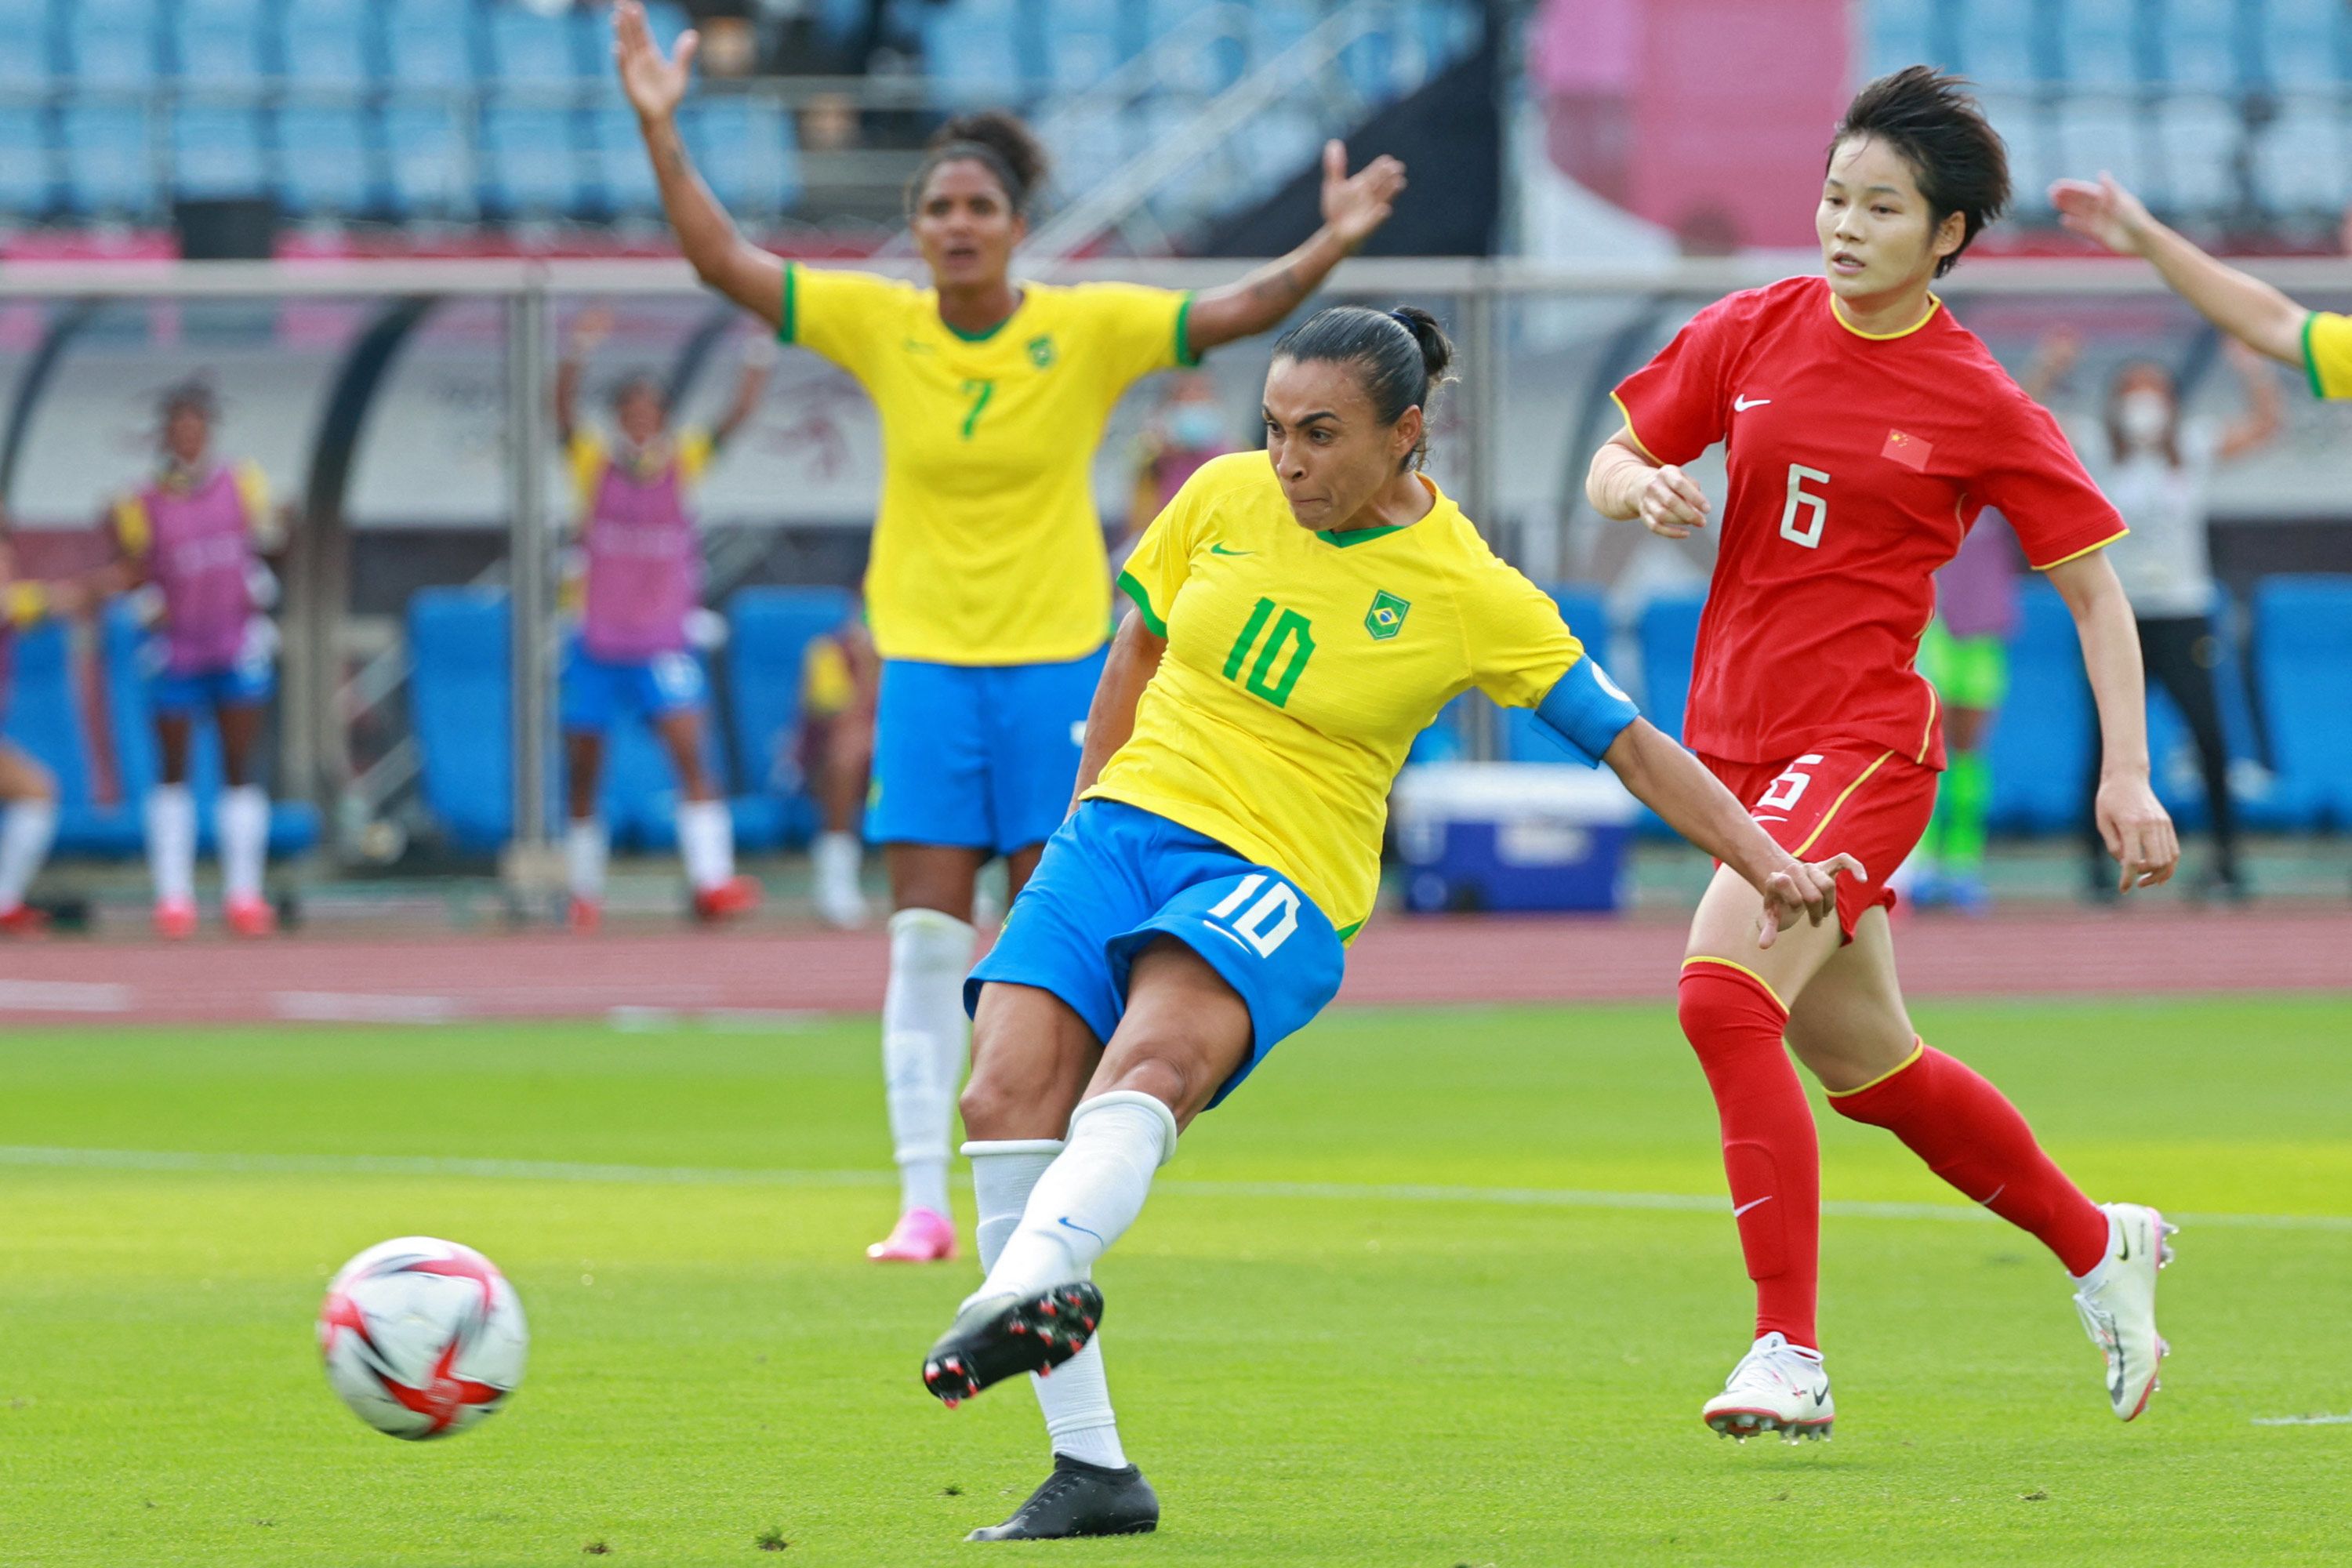 Women's football in Brazil - Wikipedia